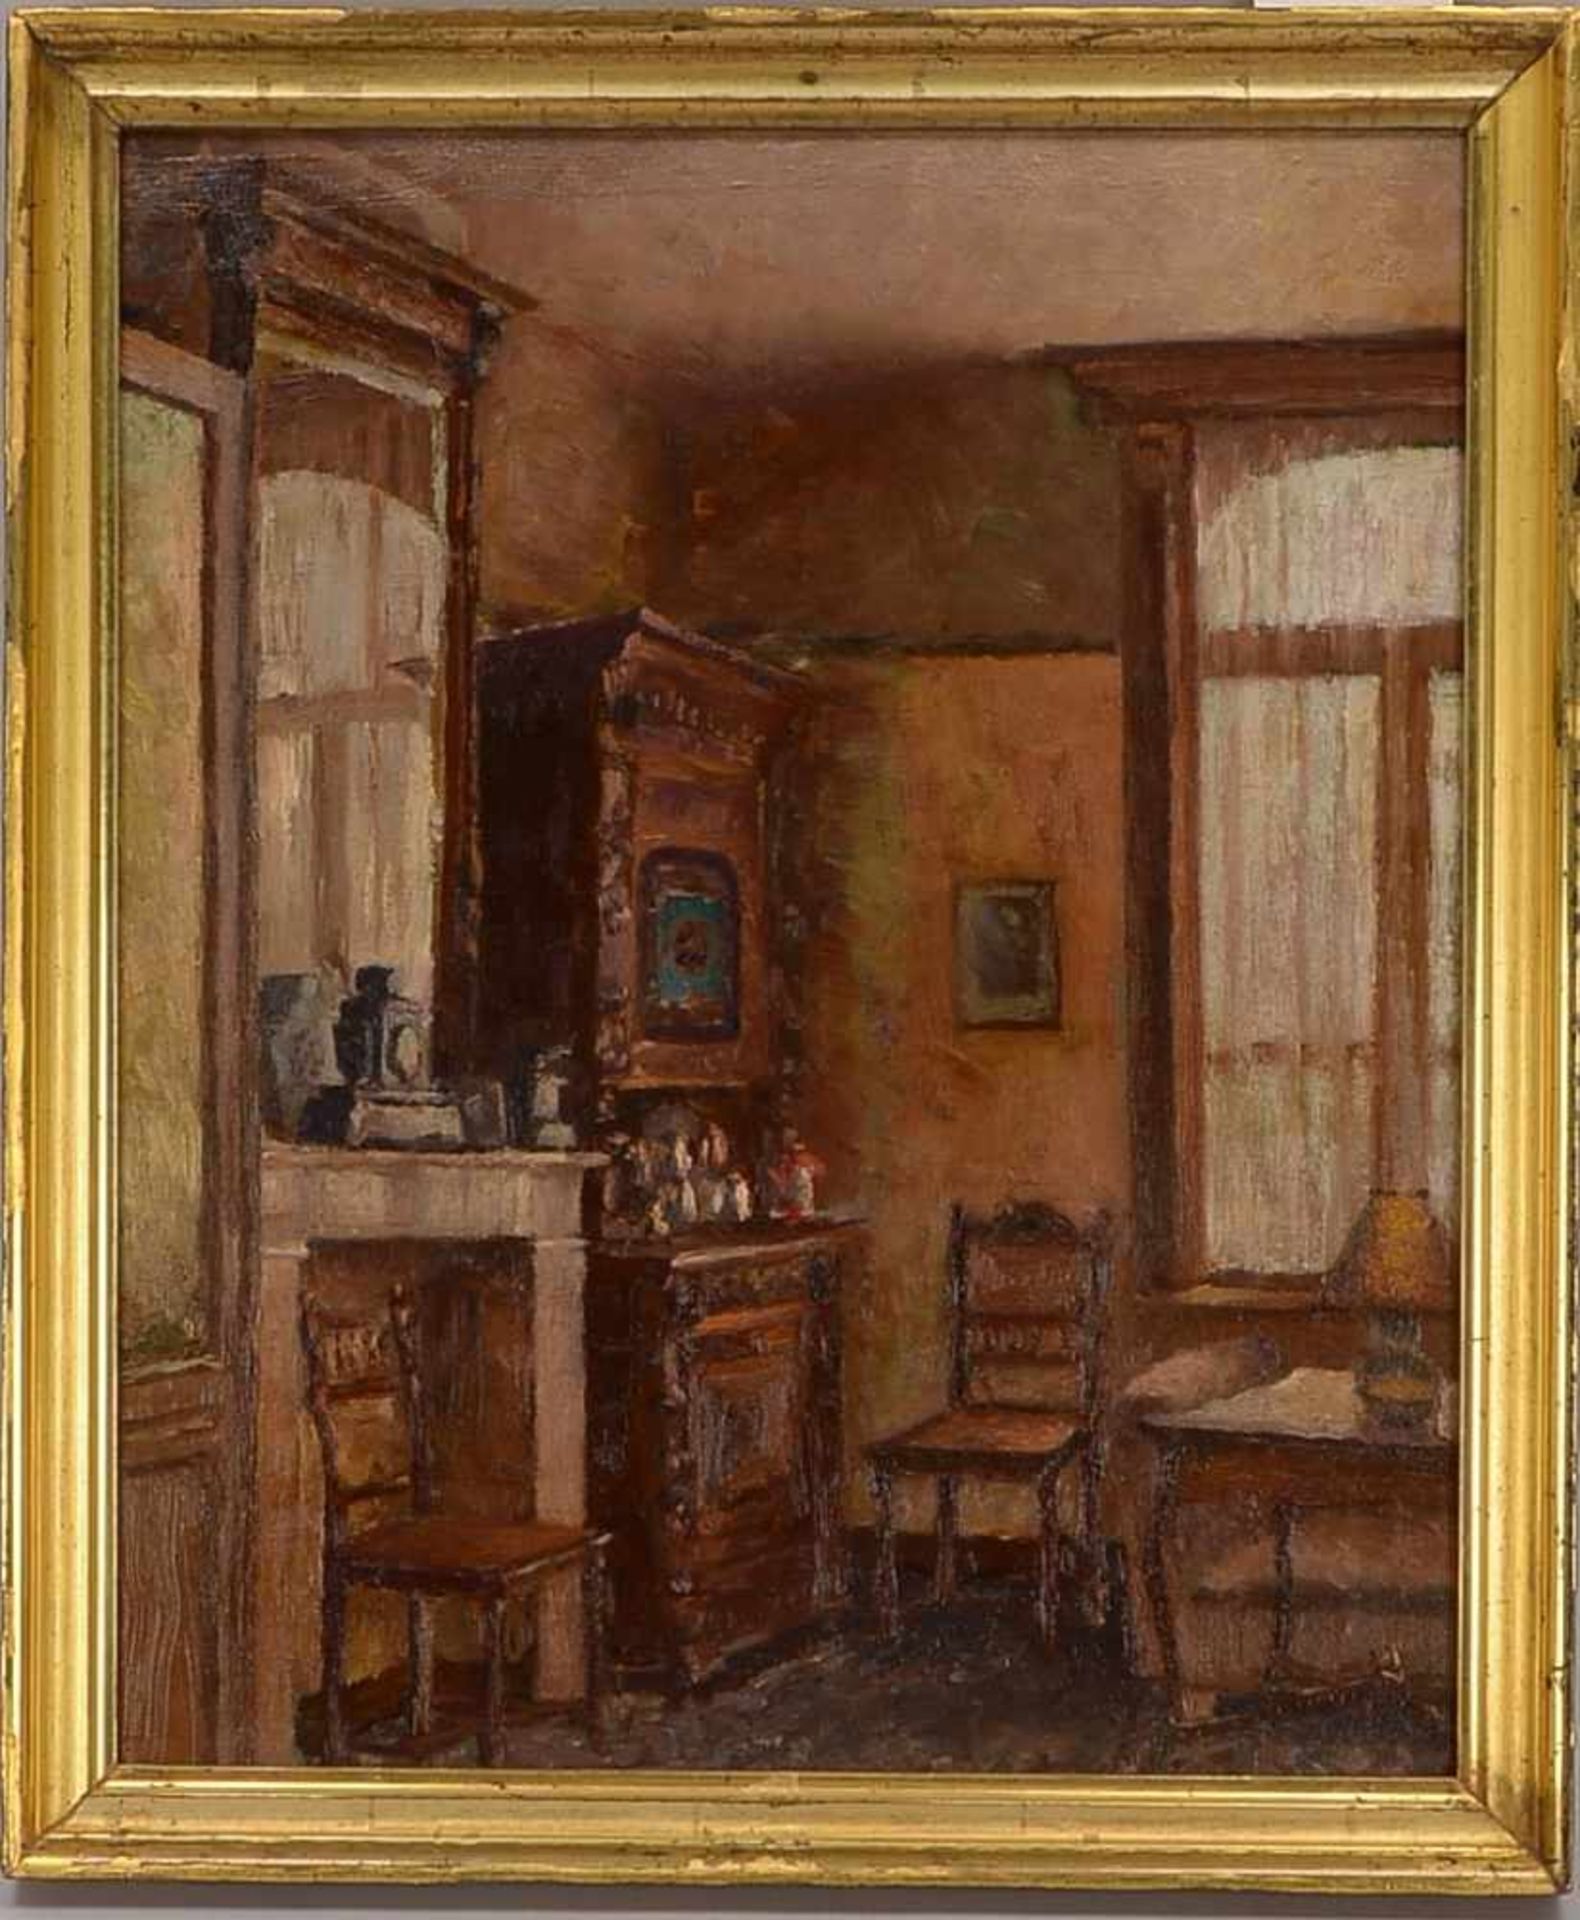 Gemälde (belgischer Künstler, um 1900), 'Stuben-Stillleben mit Interieur', Öl/Lw; Maße 46,5 x 38,5